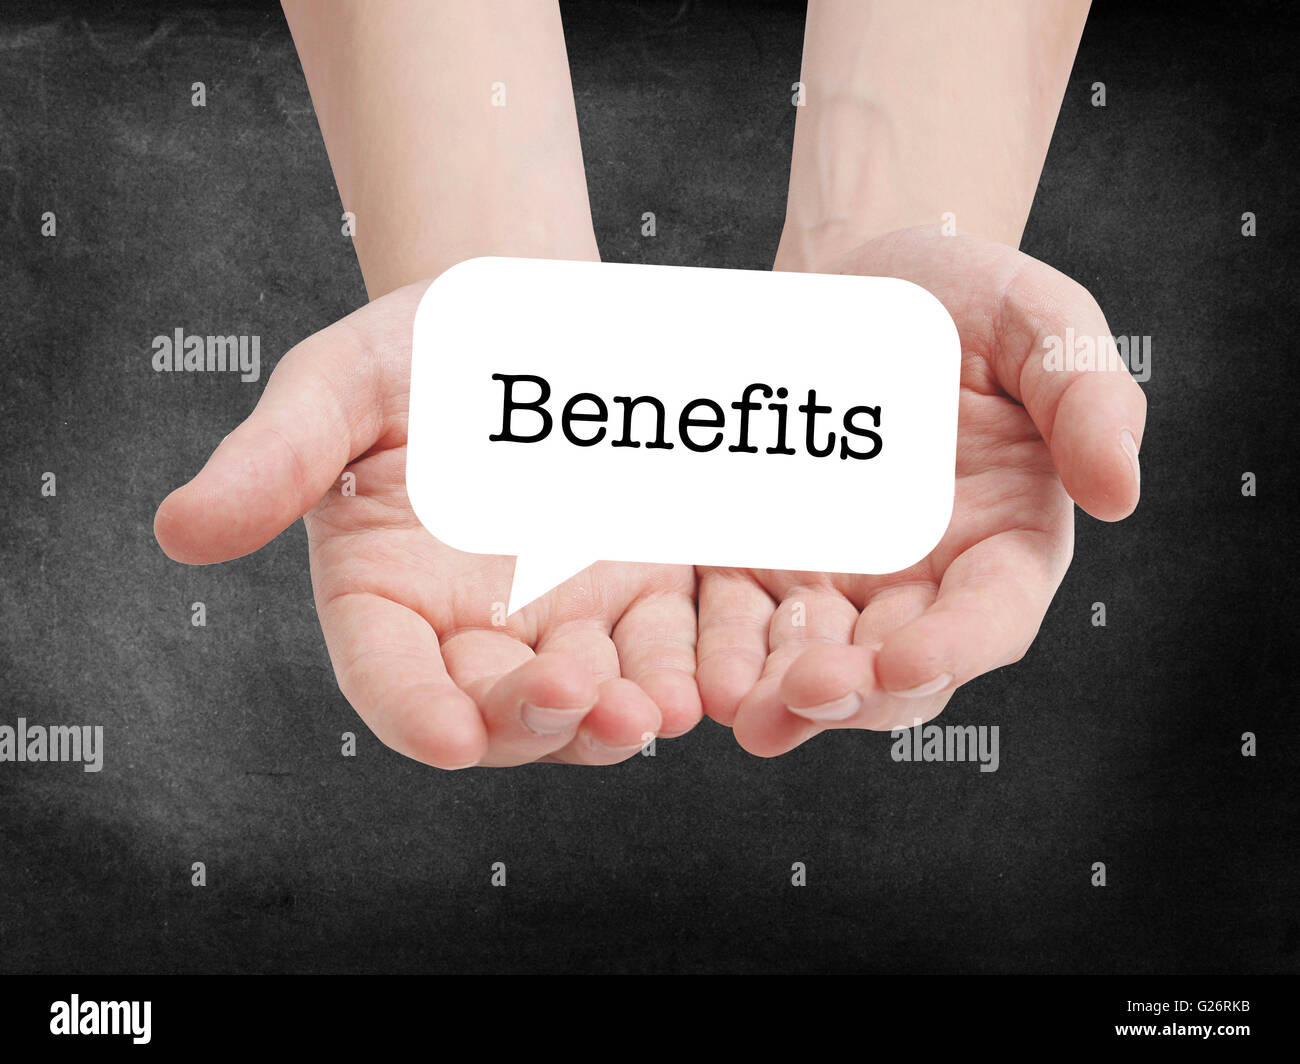 Benefits written on a speechbubble Stock Photo